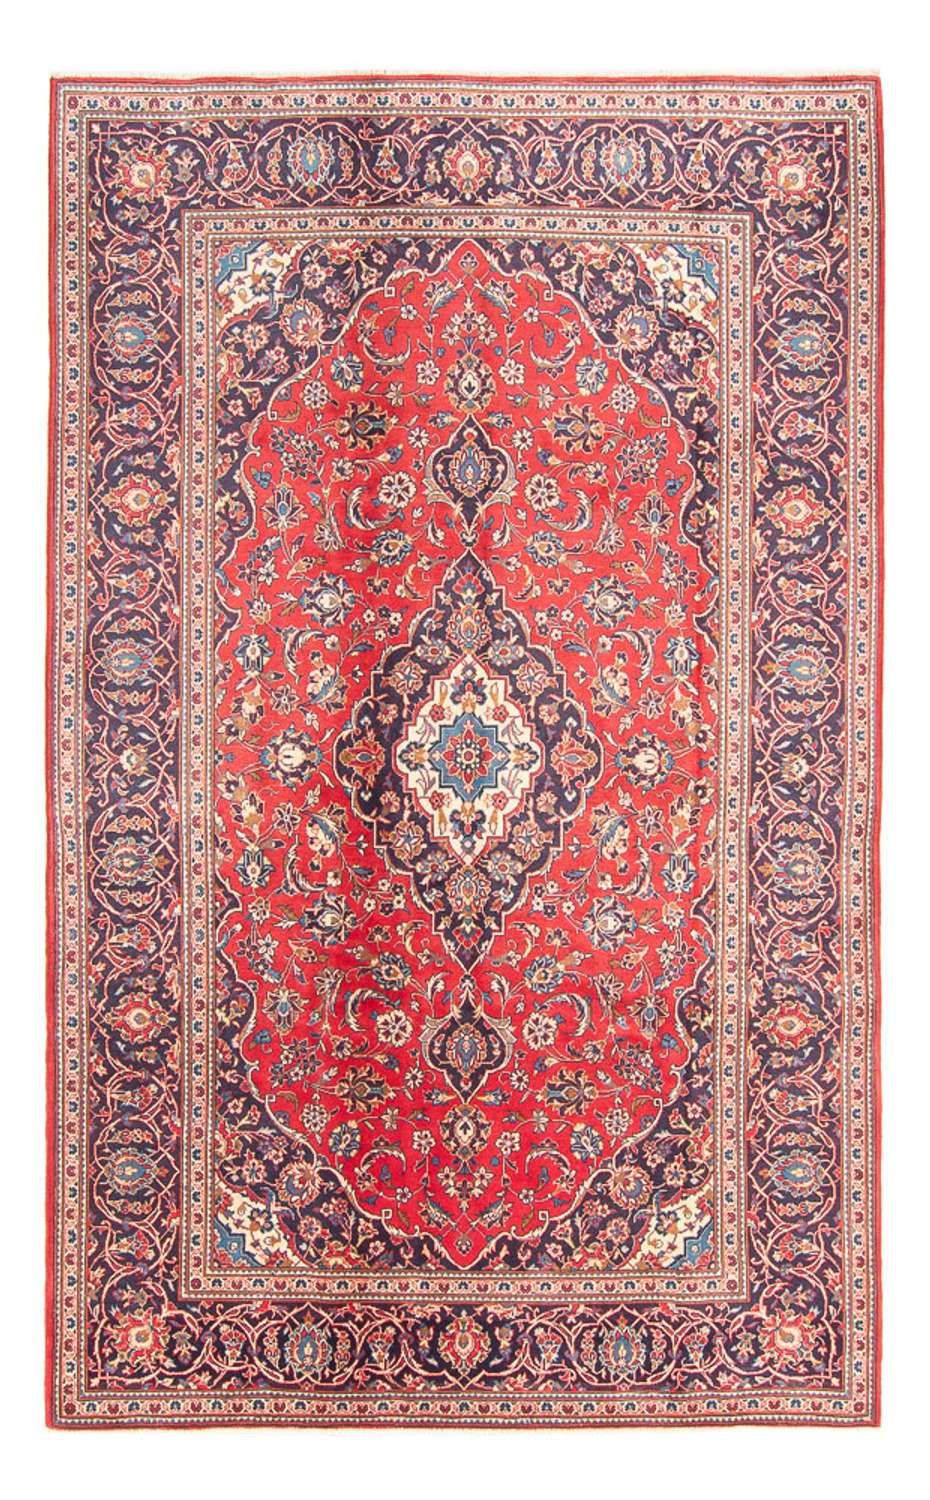 Tapete persa - Keshan - 303 x 191 cm - vermelho